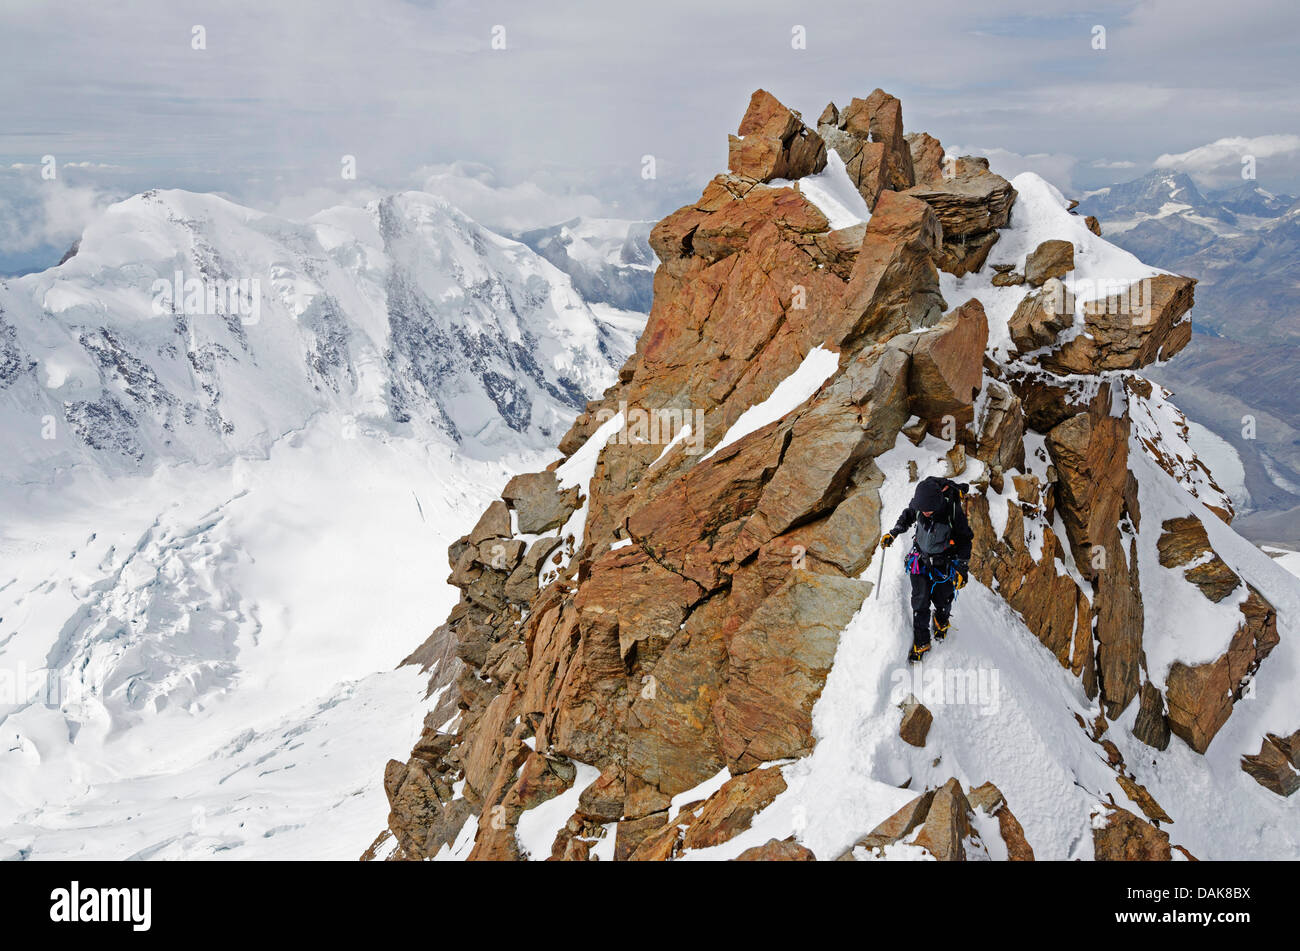 Le grimpeur Monte Rosa Duforspitze (4634m), plus haut sommet de Suisse, Zermatt, Valais, Alpes suisses, la Suisse, l'Europe (M.) Banque D'Images